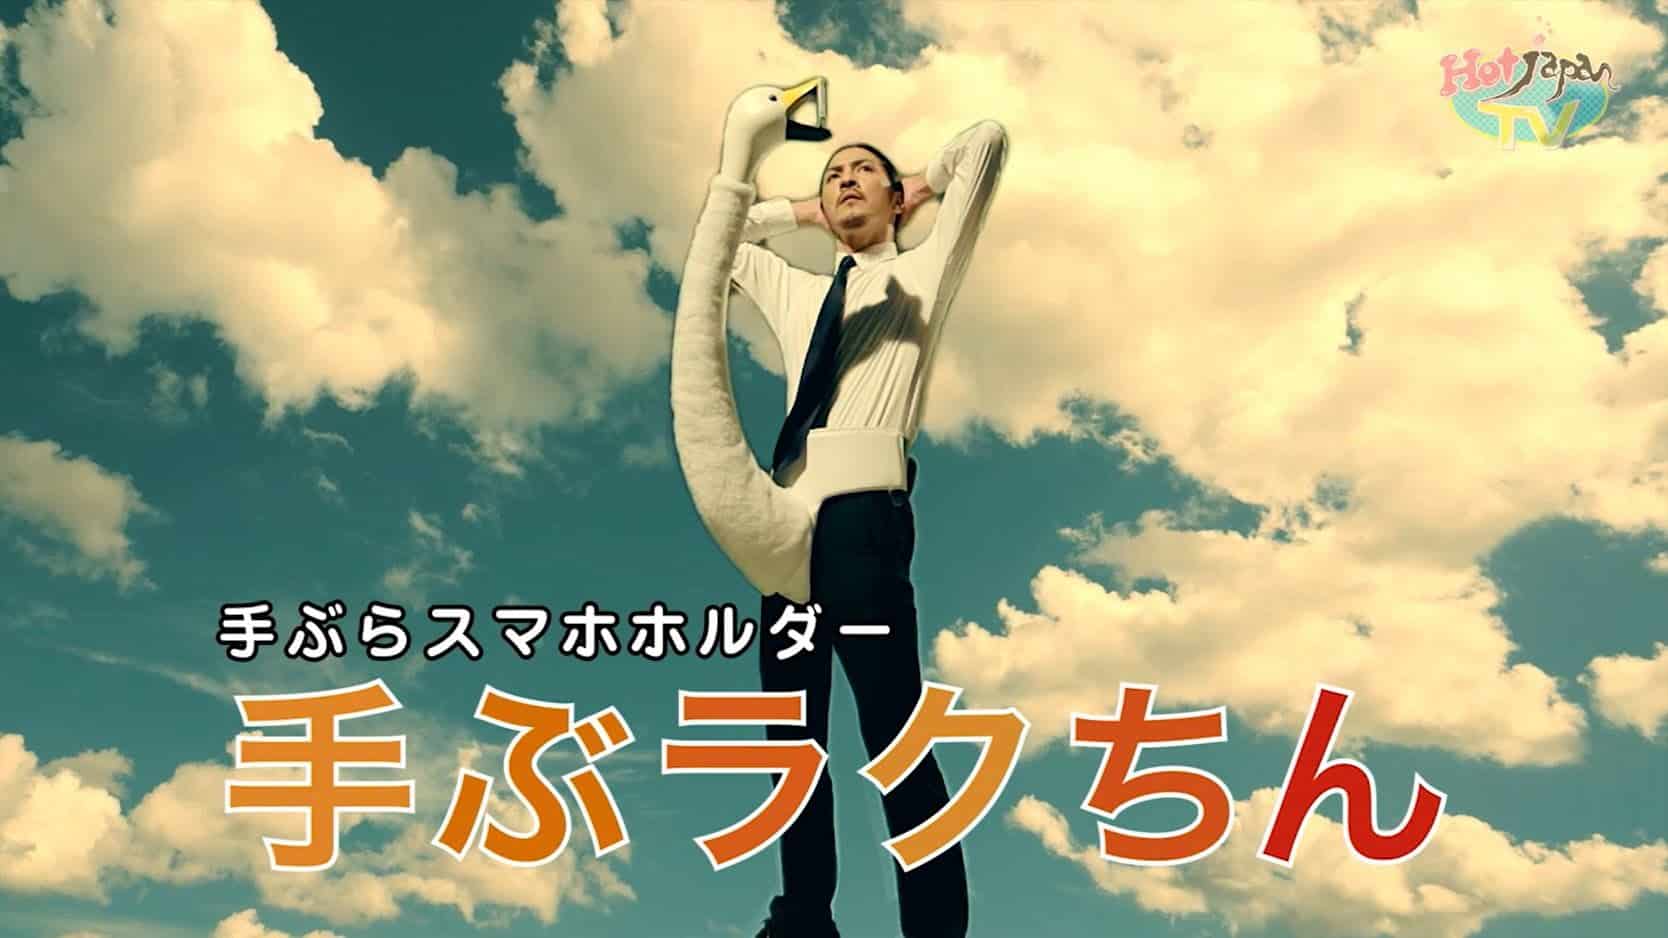 Japoński uchwyt na gęsią szyję do telefonu komórkowego z lotu ptaka